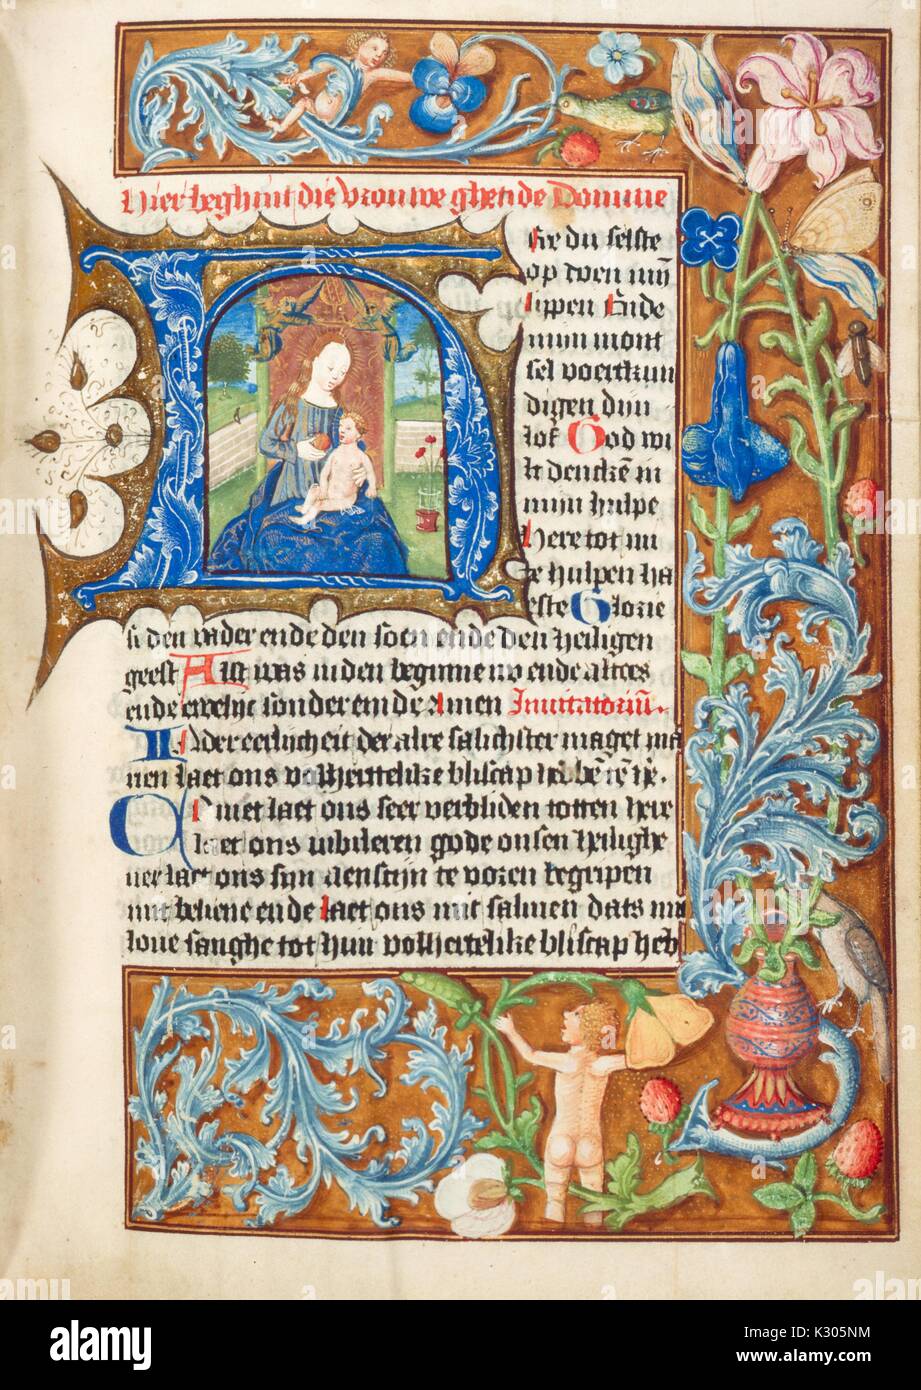 Page manuscrit lumineux représentant la Sainte Vierge l'alimentation d'un Apple à l'enfant Jésus, de 'Hier beghint ghetide die vrouwe domine, ''un néerlandais du 15e siècle livre d'heures, 2013. Banque D'Images